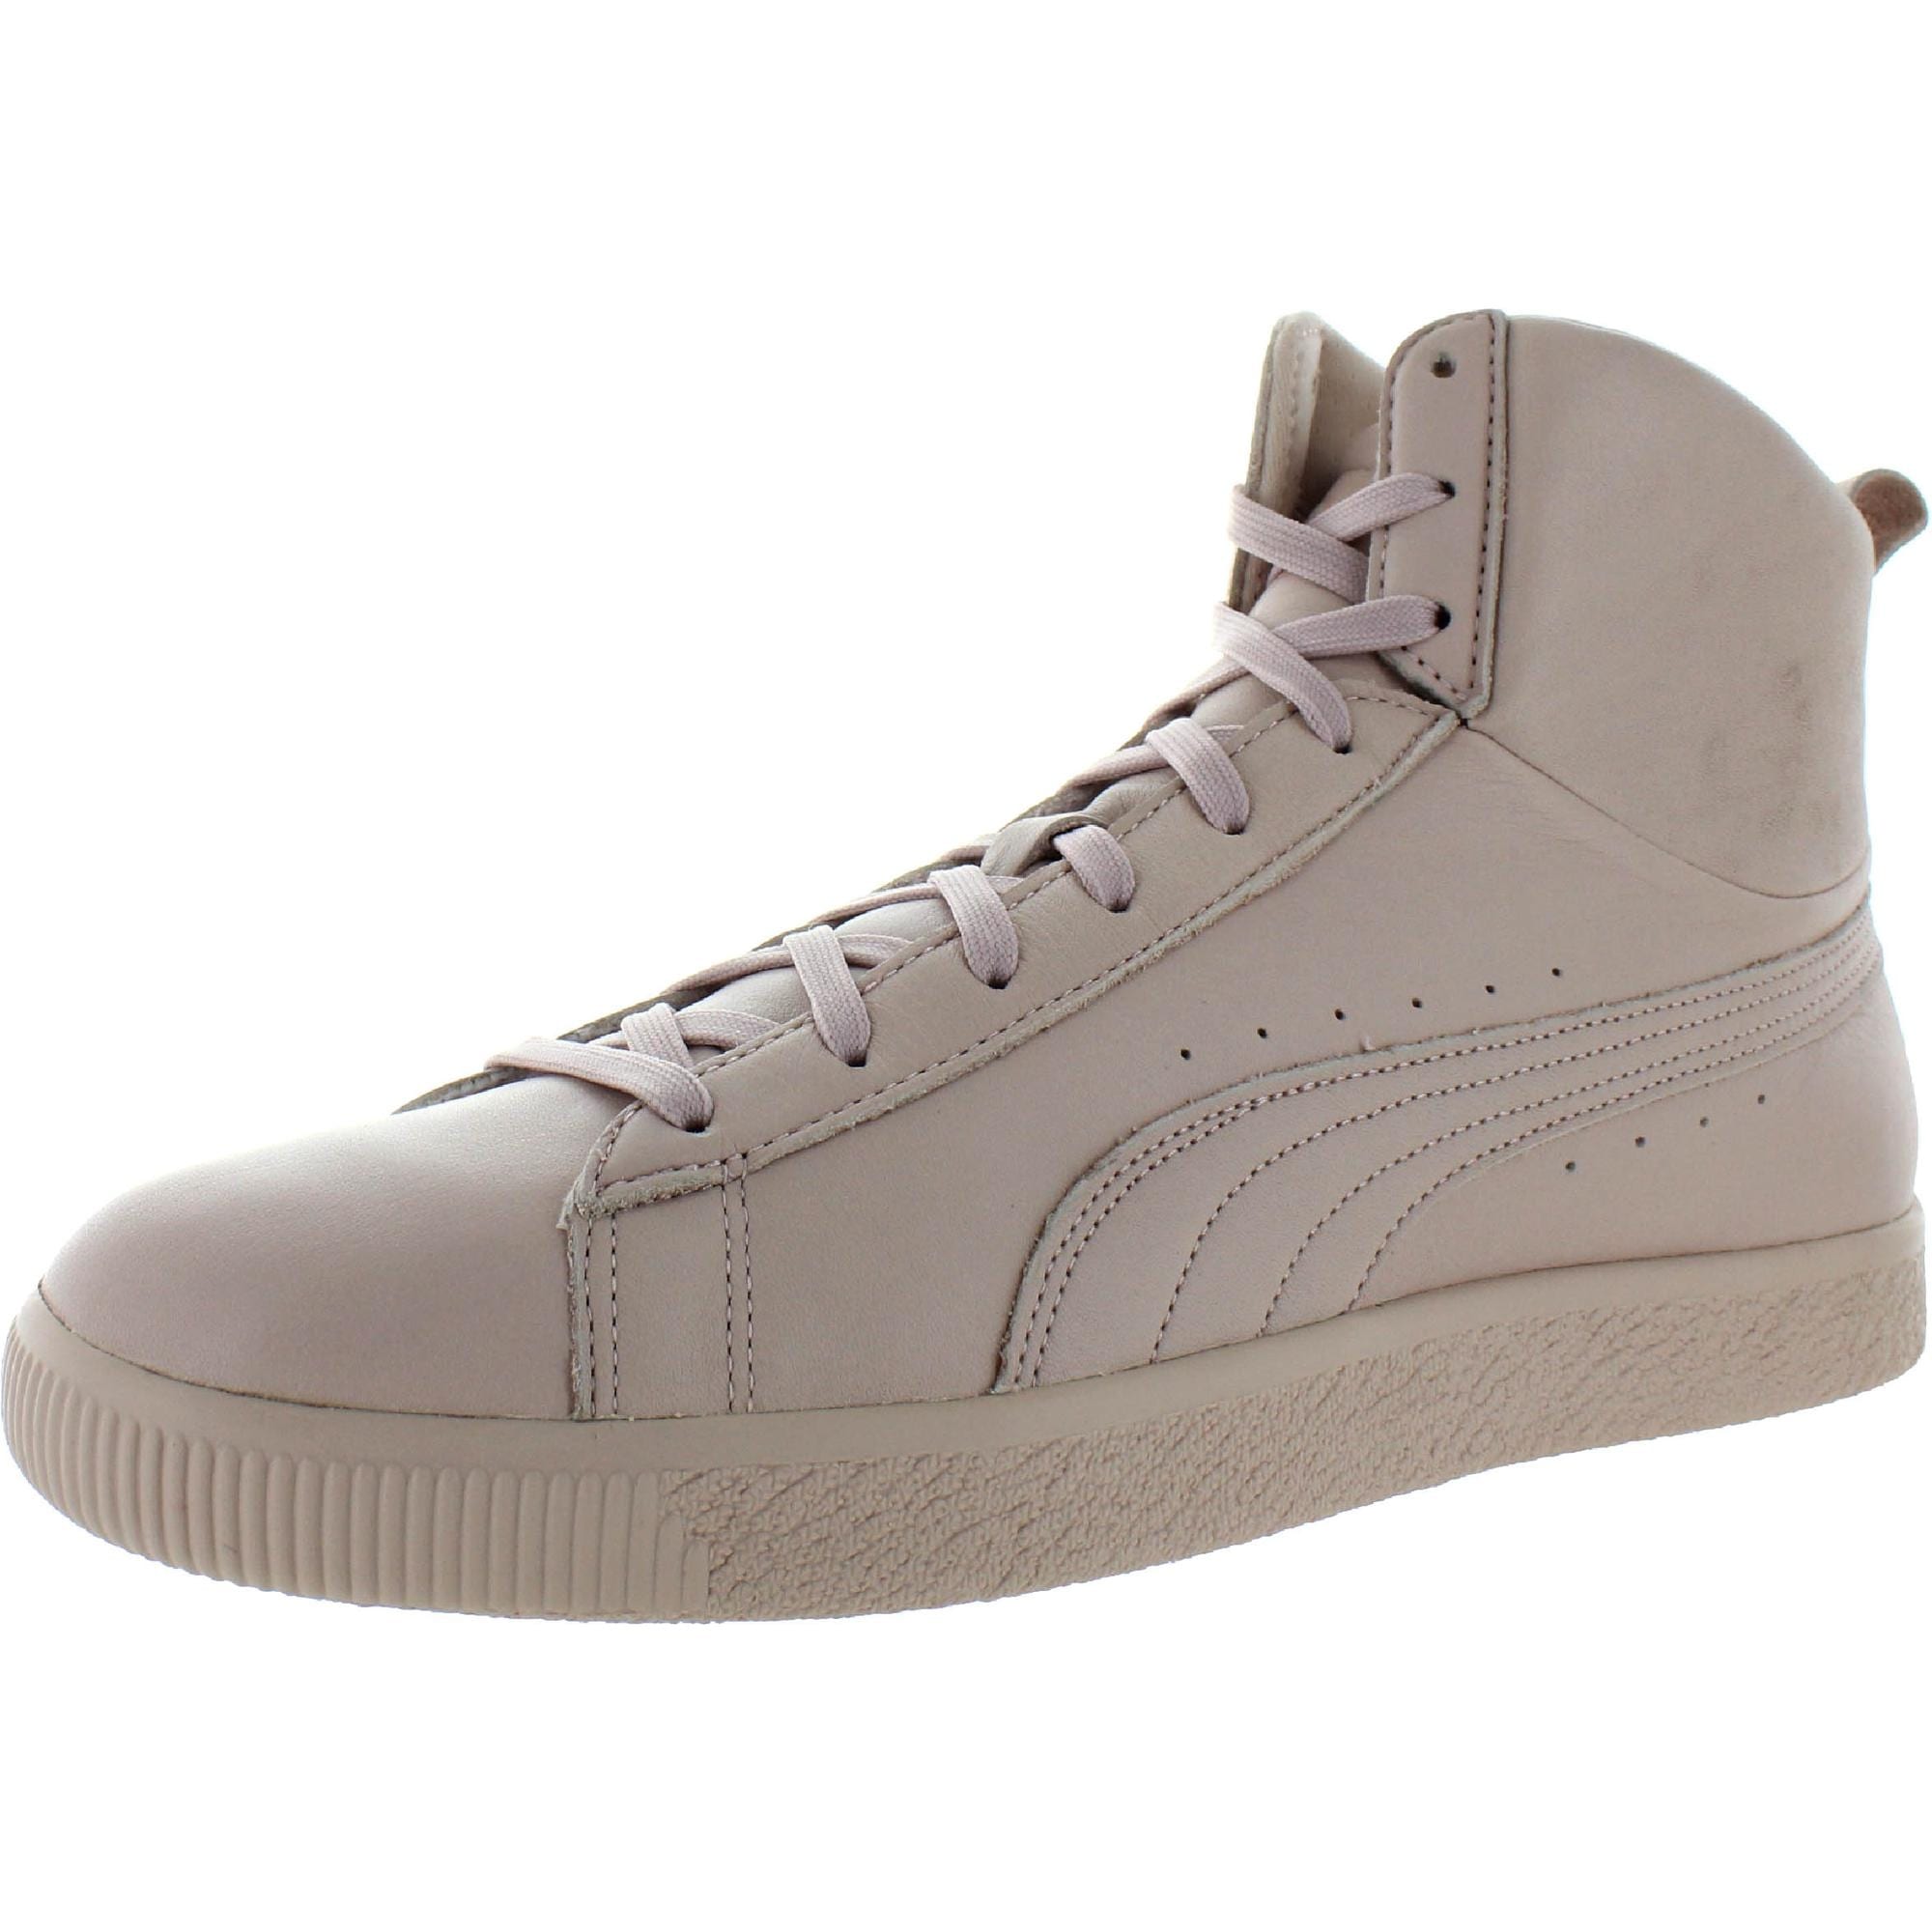 puma high top white sneakers